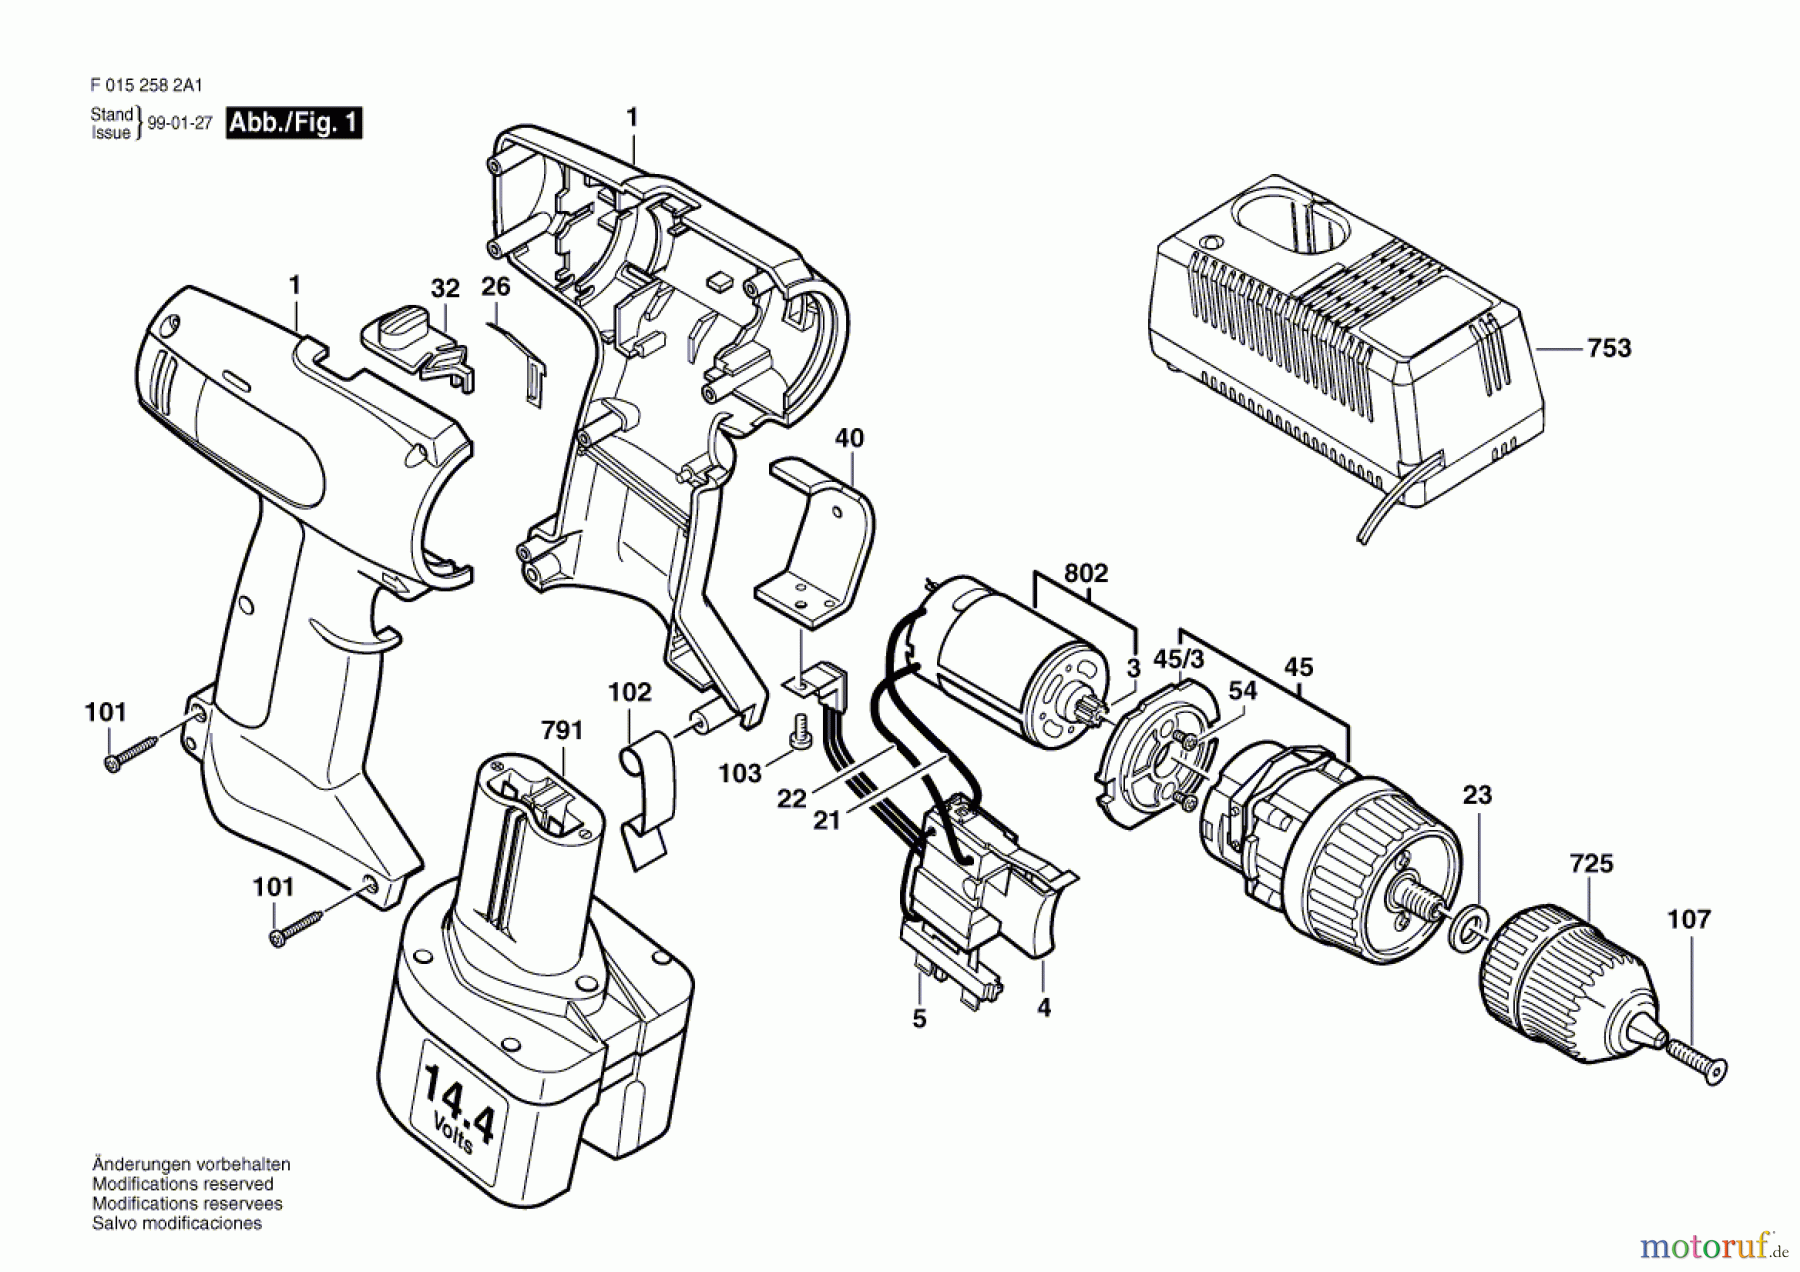  Bosch Werkzeug Bohrschrauber 2582 Seite 1